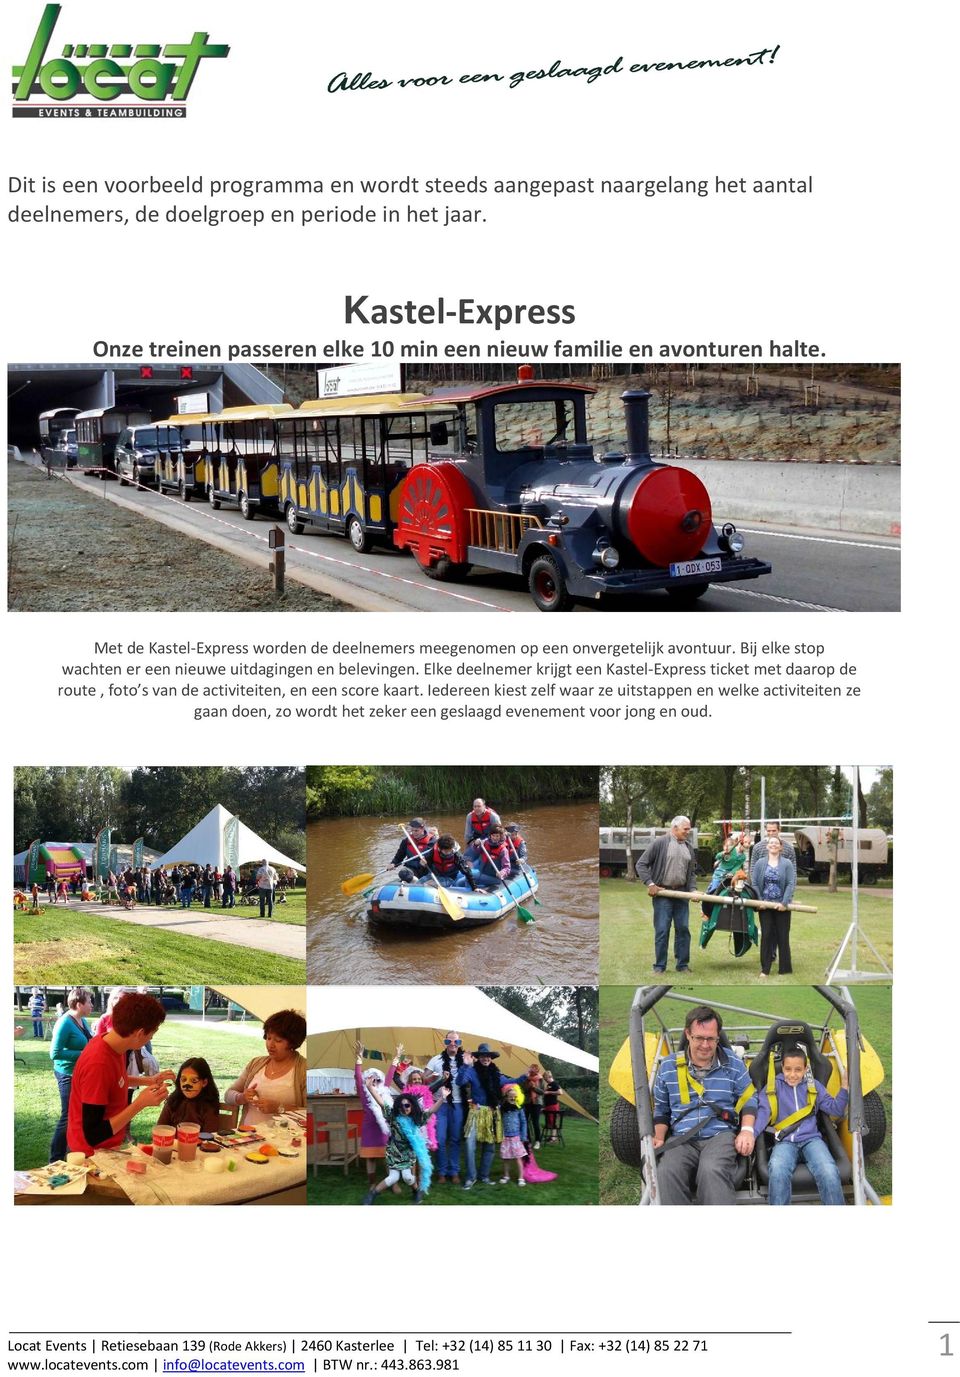 Met de Kastel Express worden de deelnemers meegenomen op een onvergetelijk avontuur. Bij elke stop wachten er een nieuwe uitdagingen en belevingen.